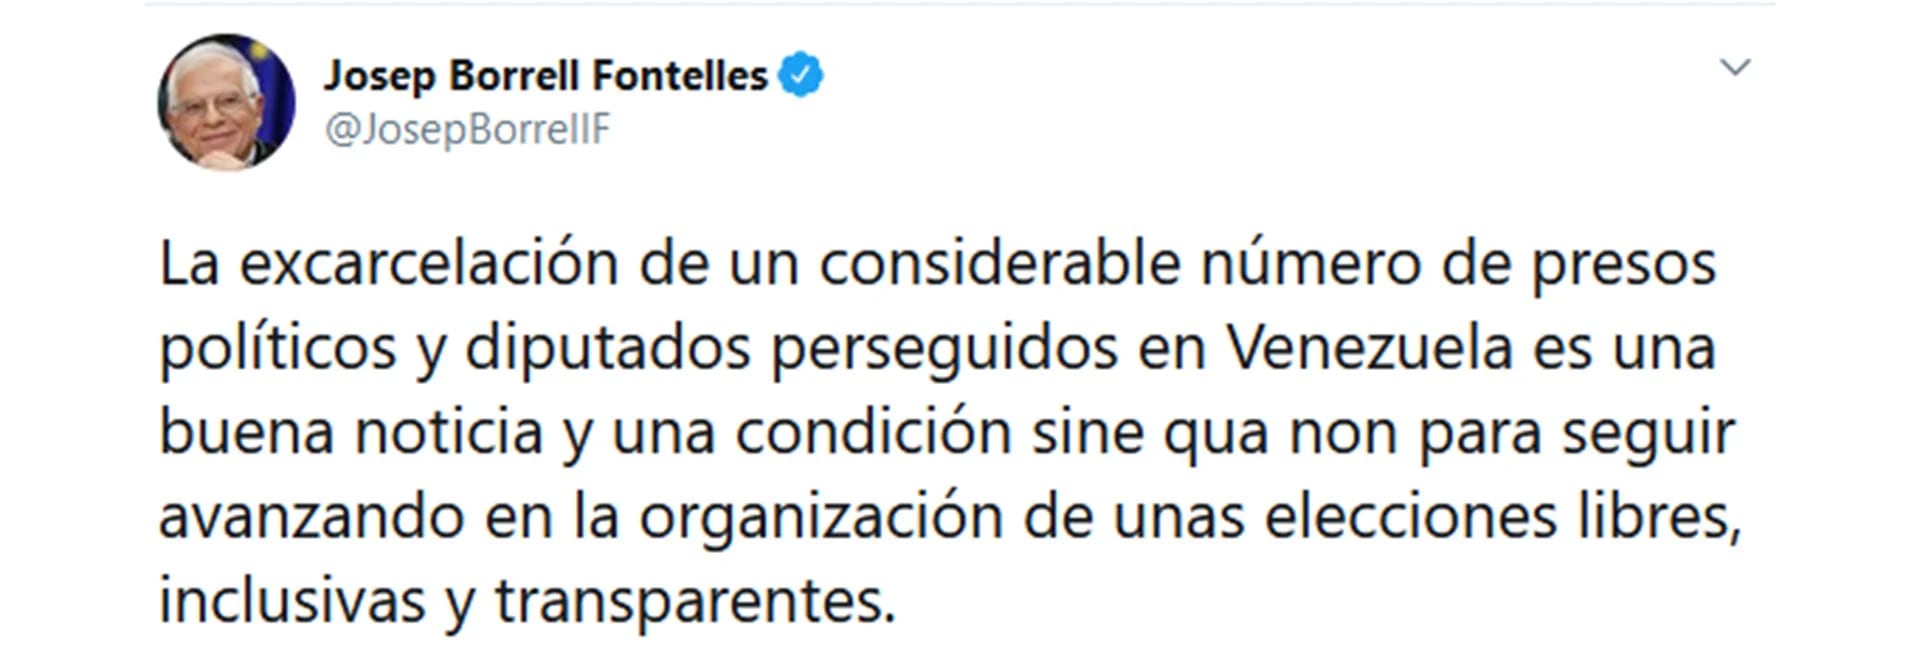 El tuit de Josep Borrell